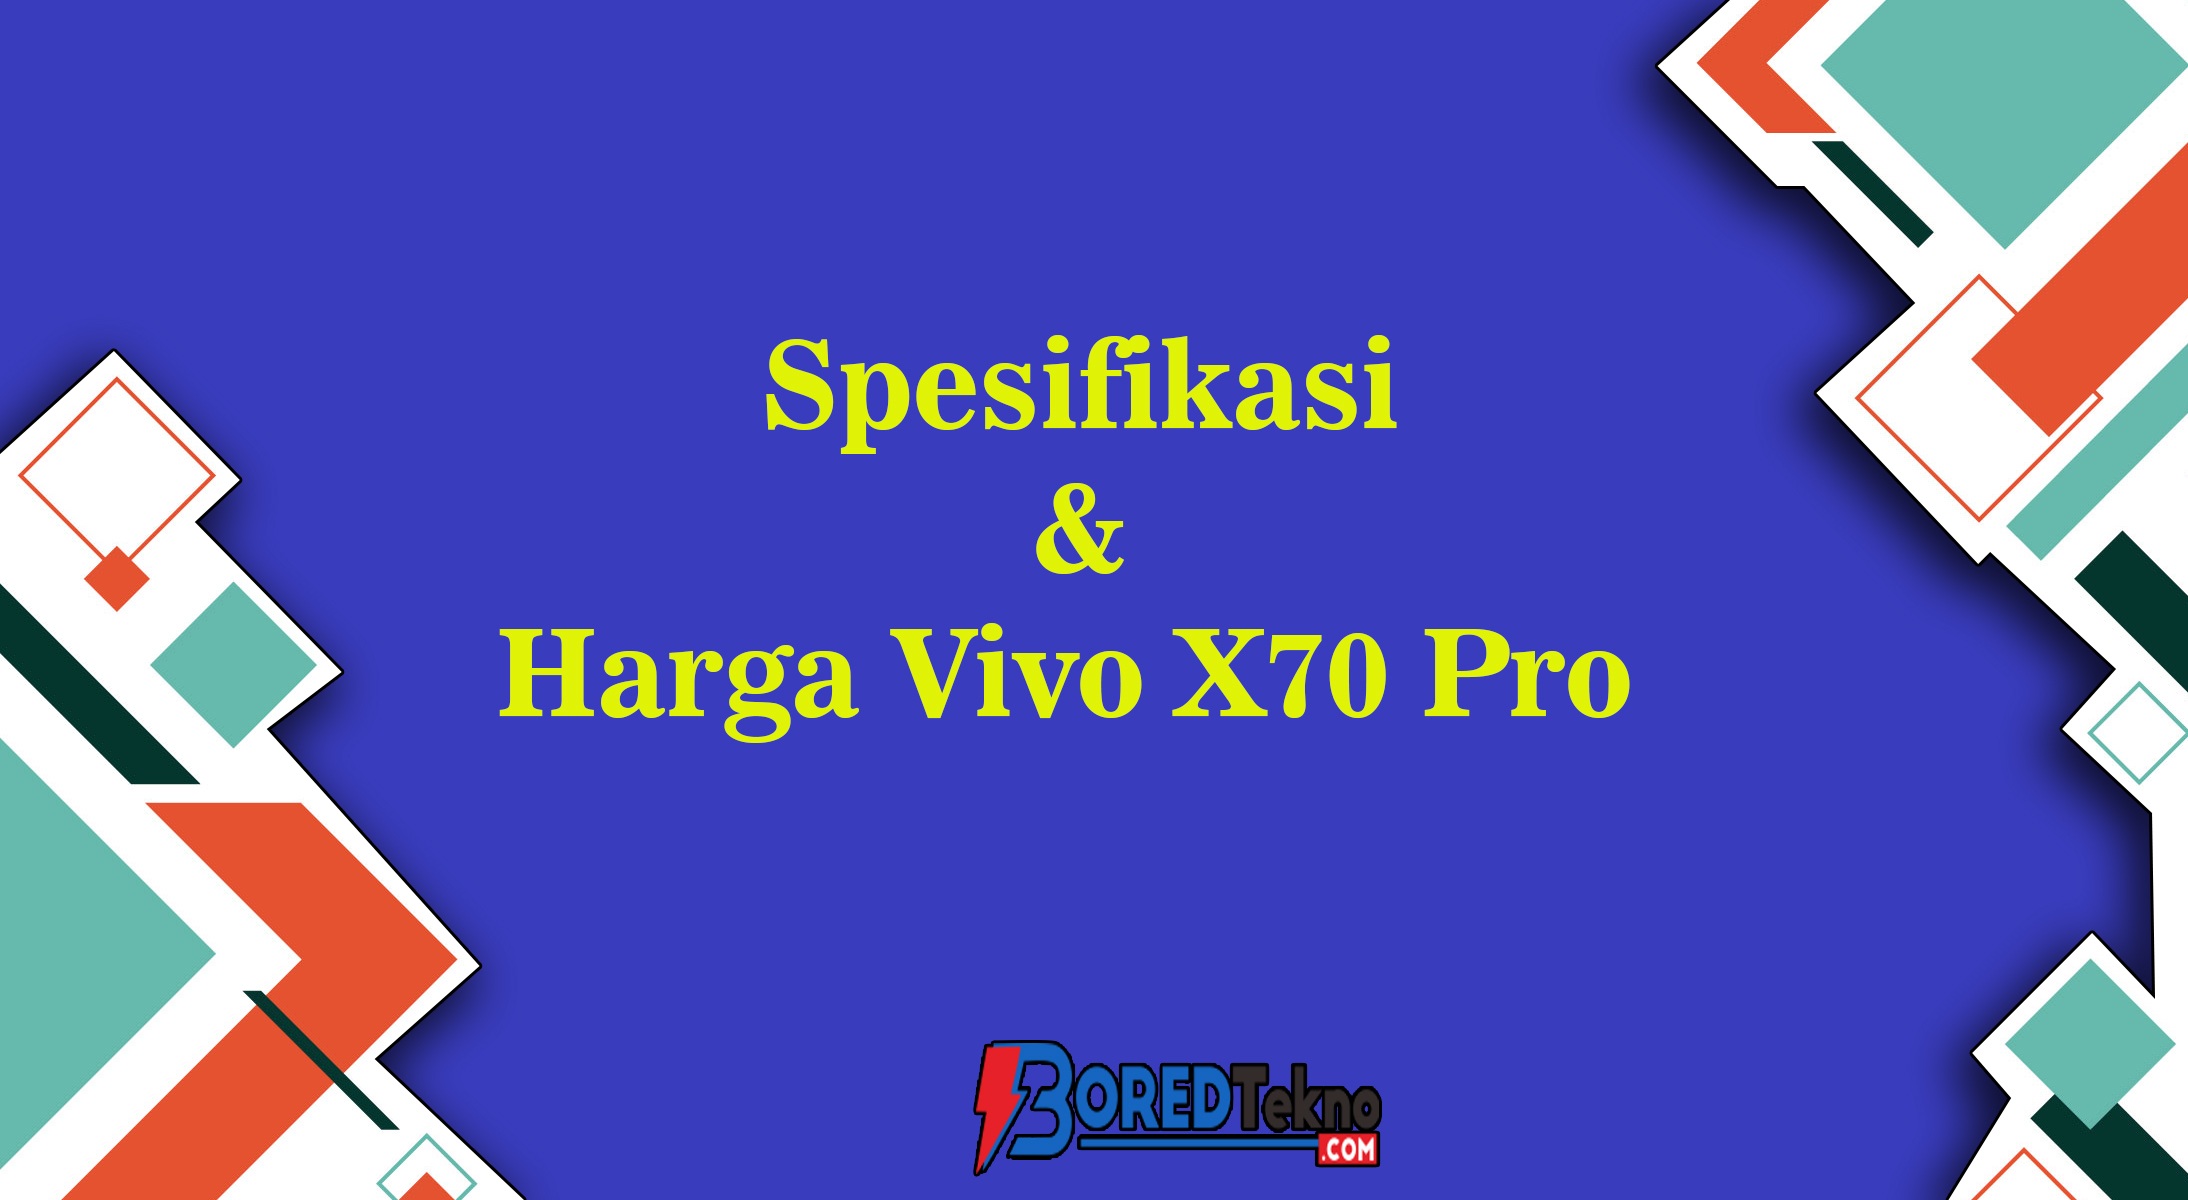 Spesifikasi & Harga Vivo X70 Pro